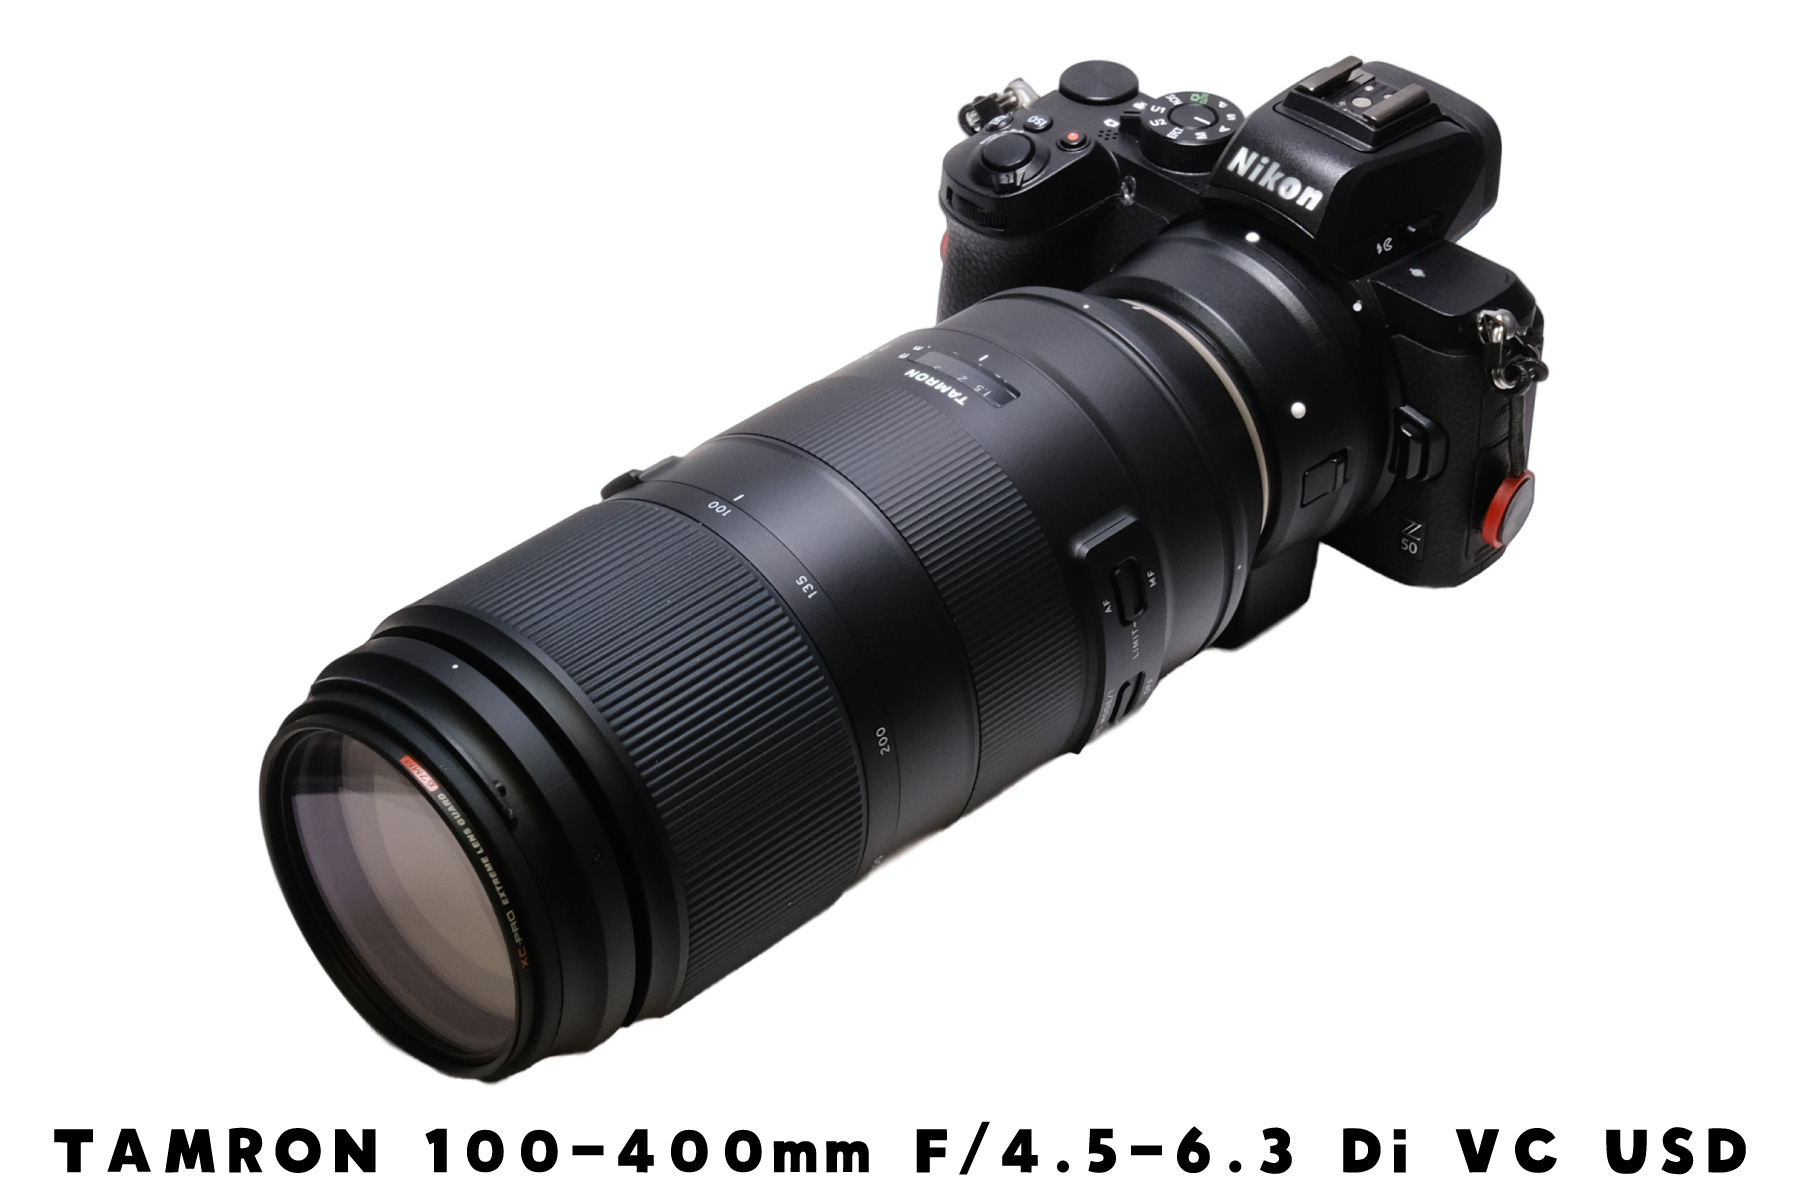 TAMRON 100-400mm F/4.5-6.3